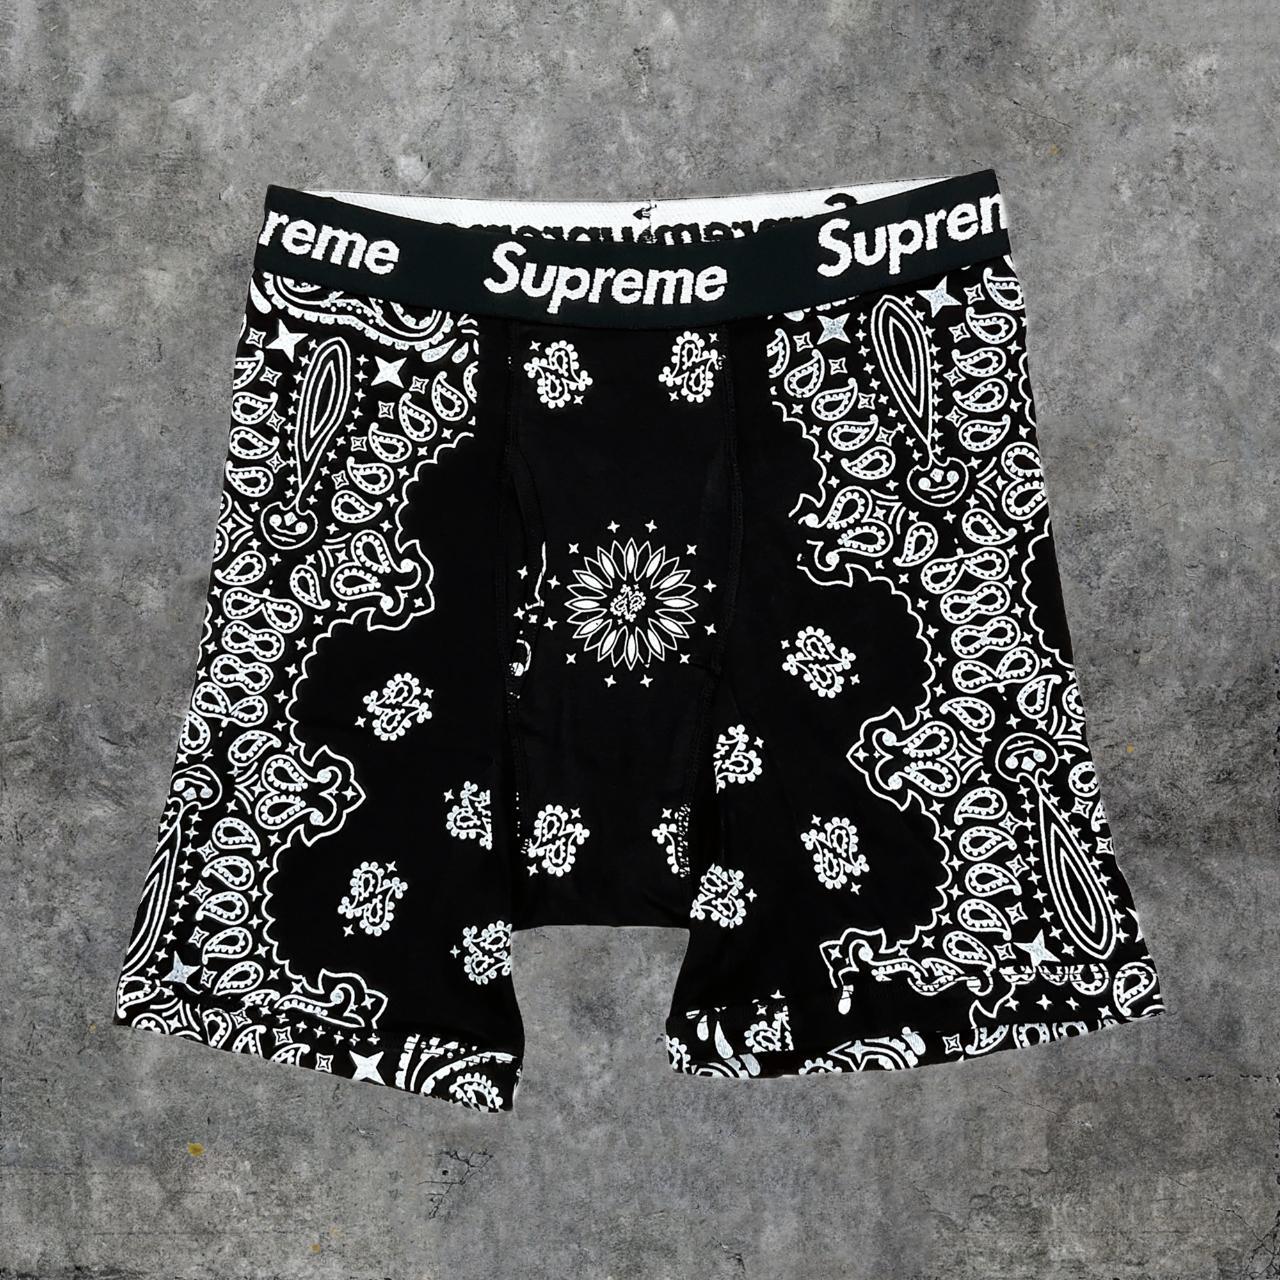 women's supreme underwear never worn size x's - Depop